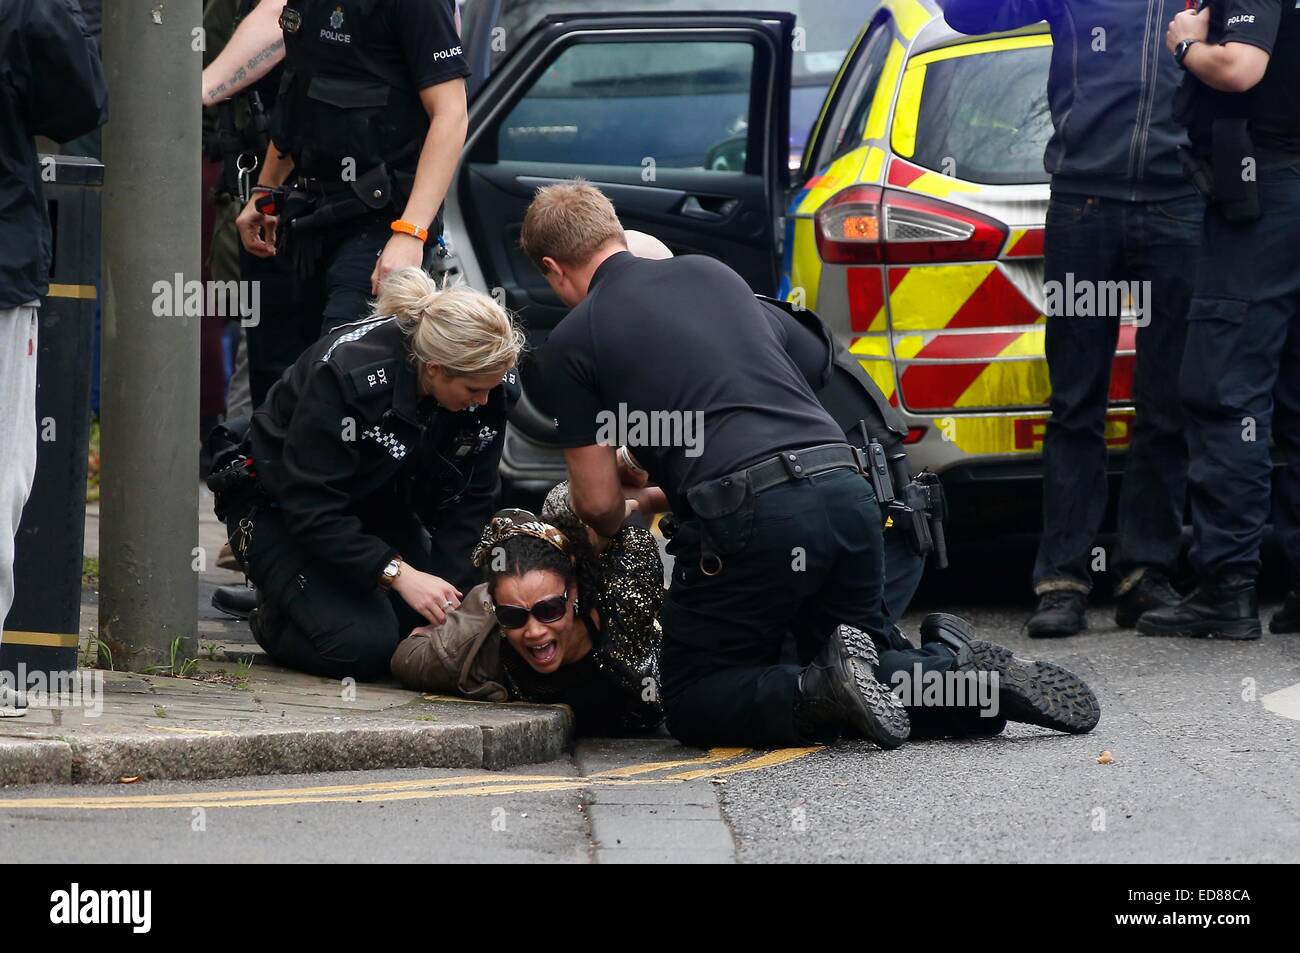 Amateur photographer arrested uk guildford